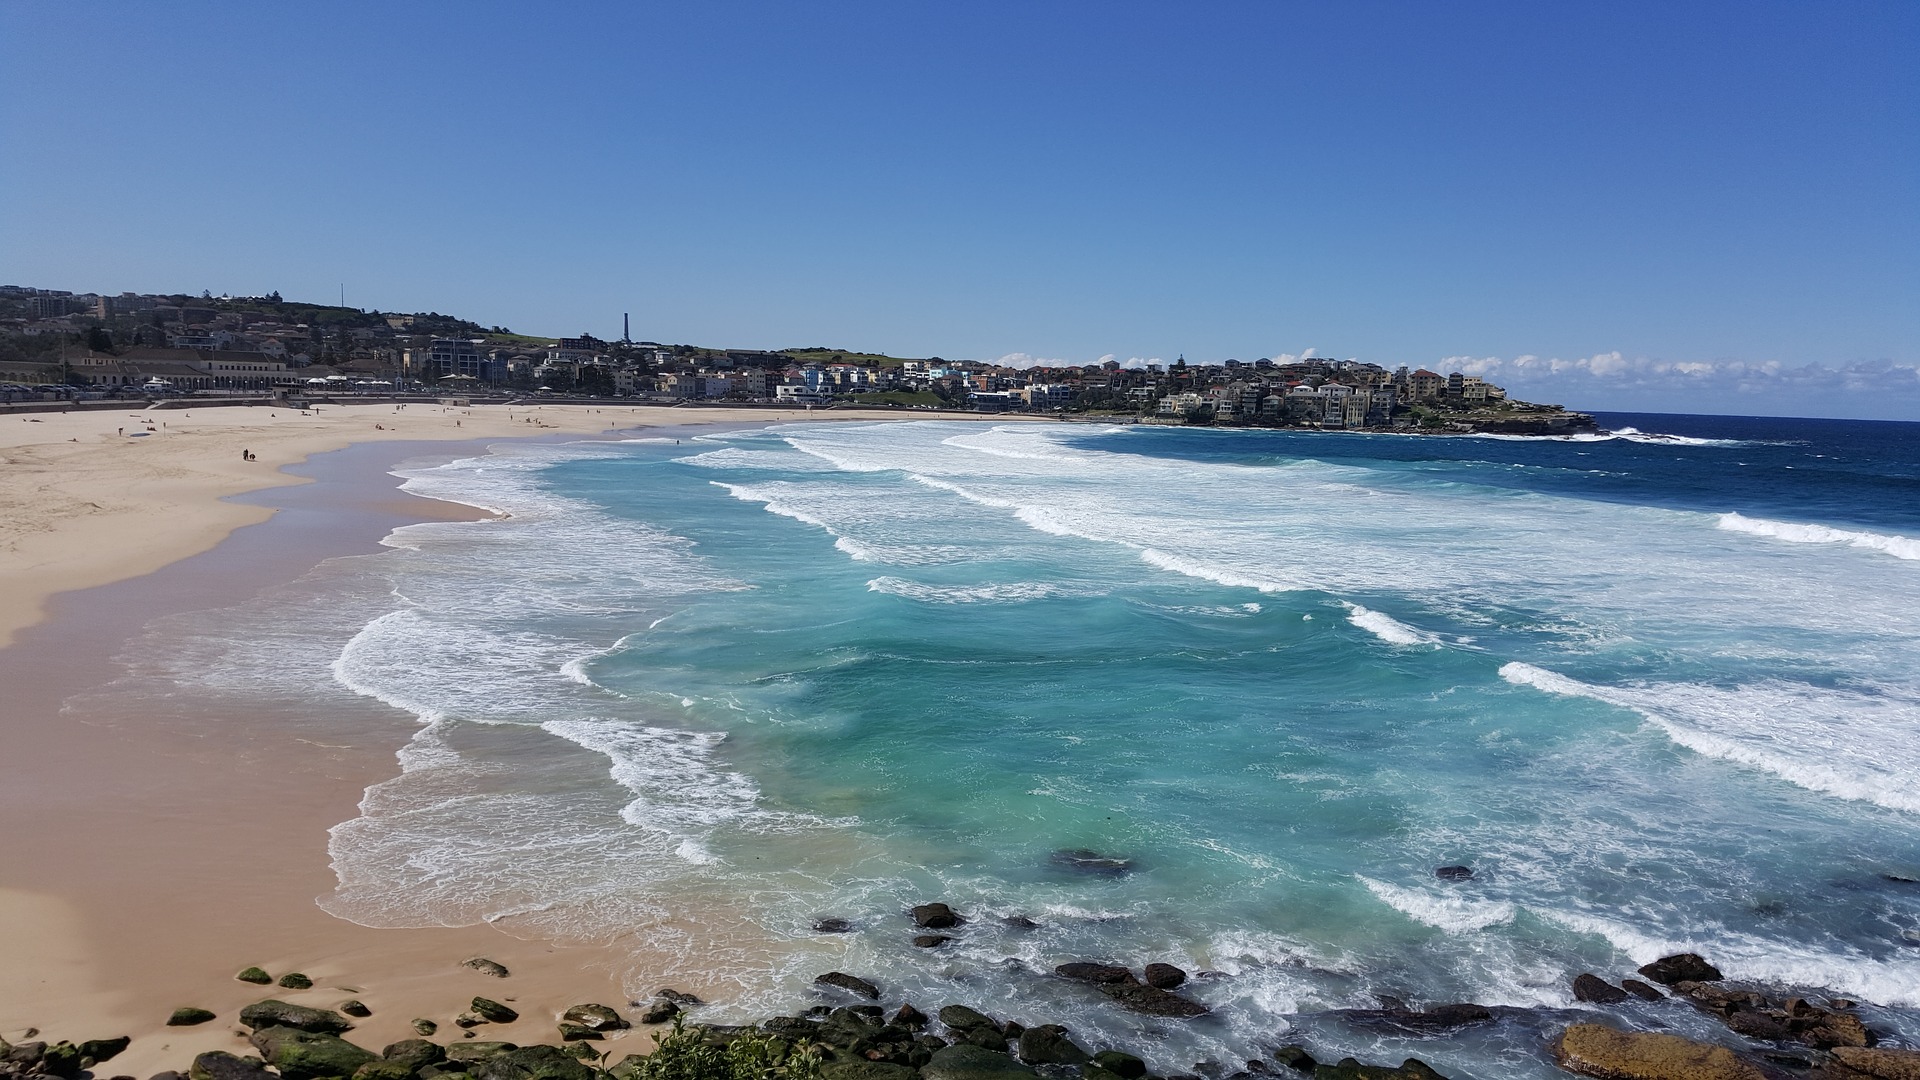 Sydney's warmest weekend in seven months